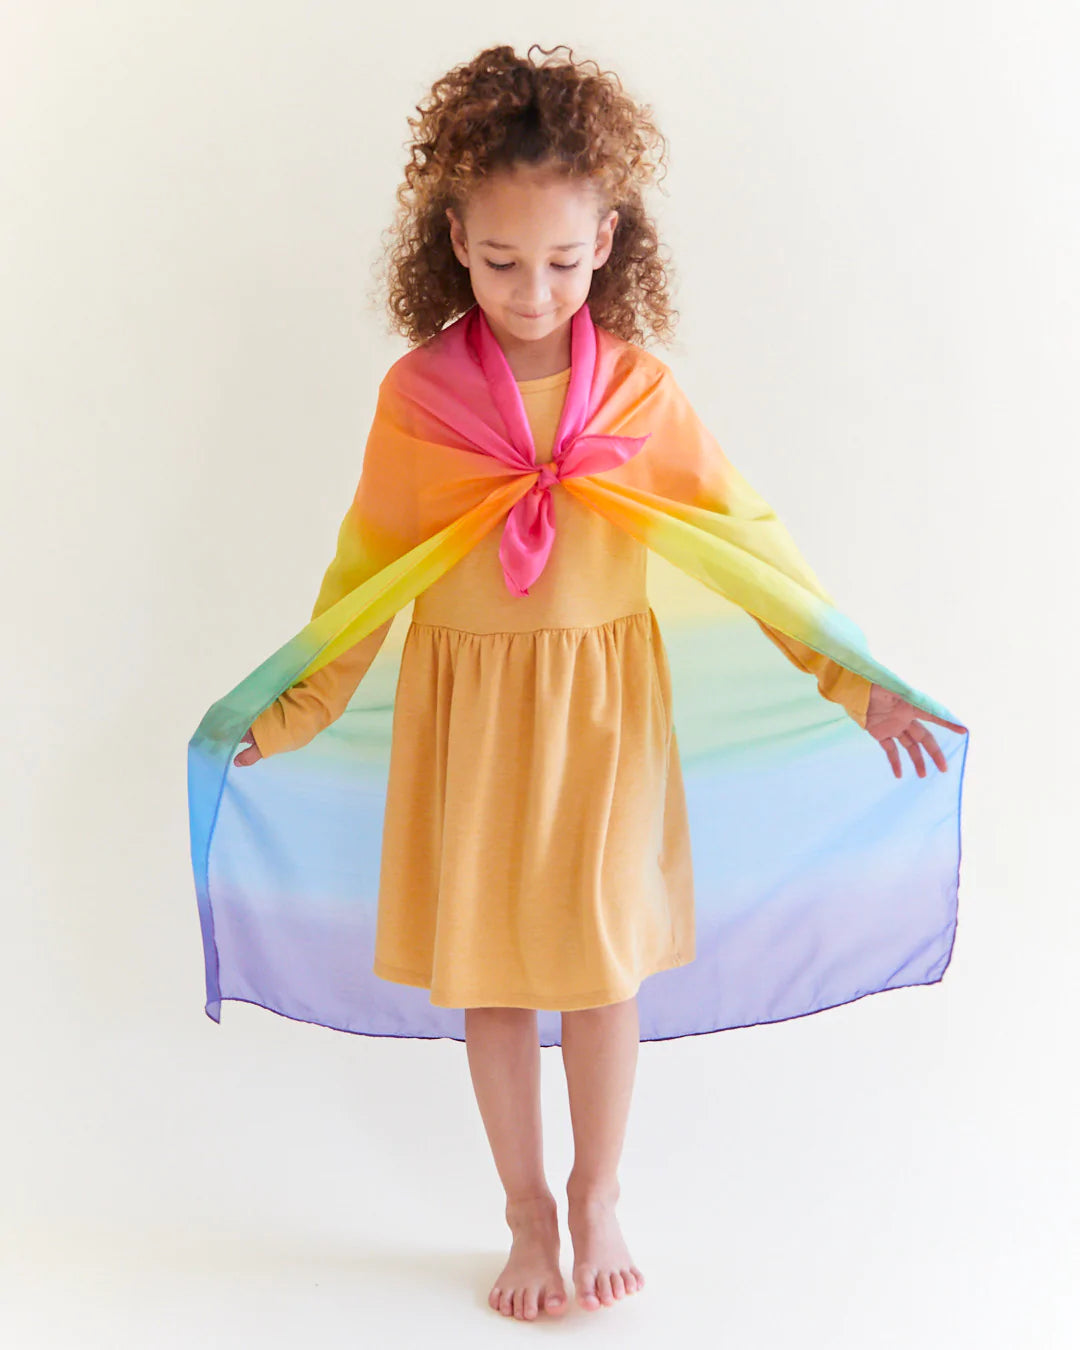 Serviette de jeu en soie «Rainbow» de Sarah's Silks